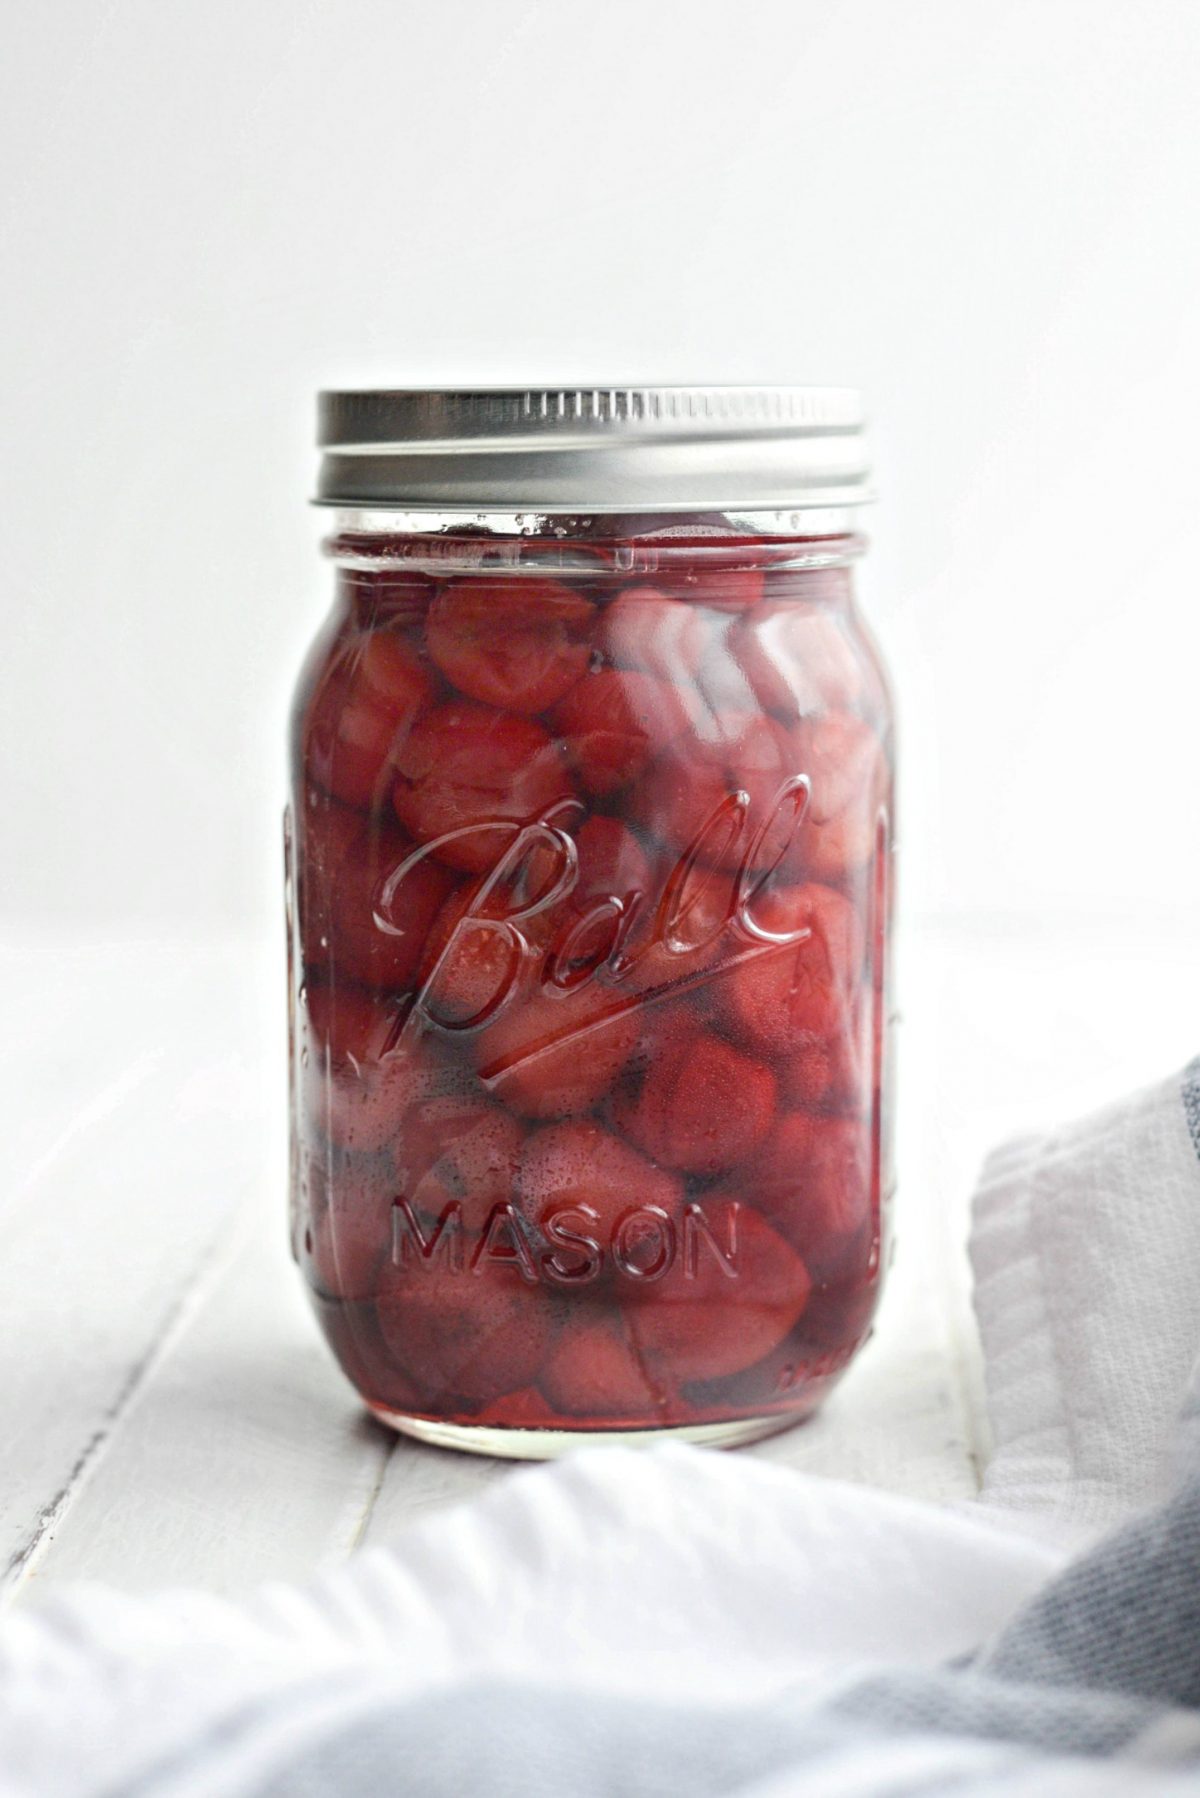 Homemade Maraschino Cherries l SimplyScratch.com